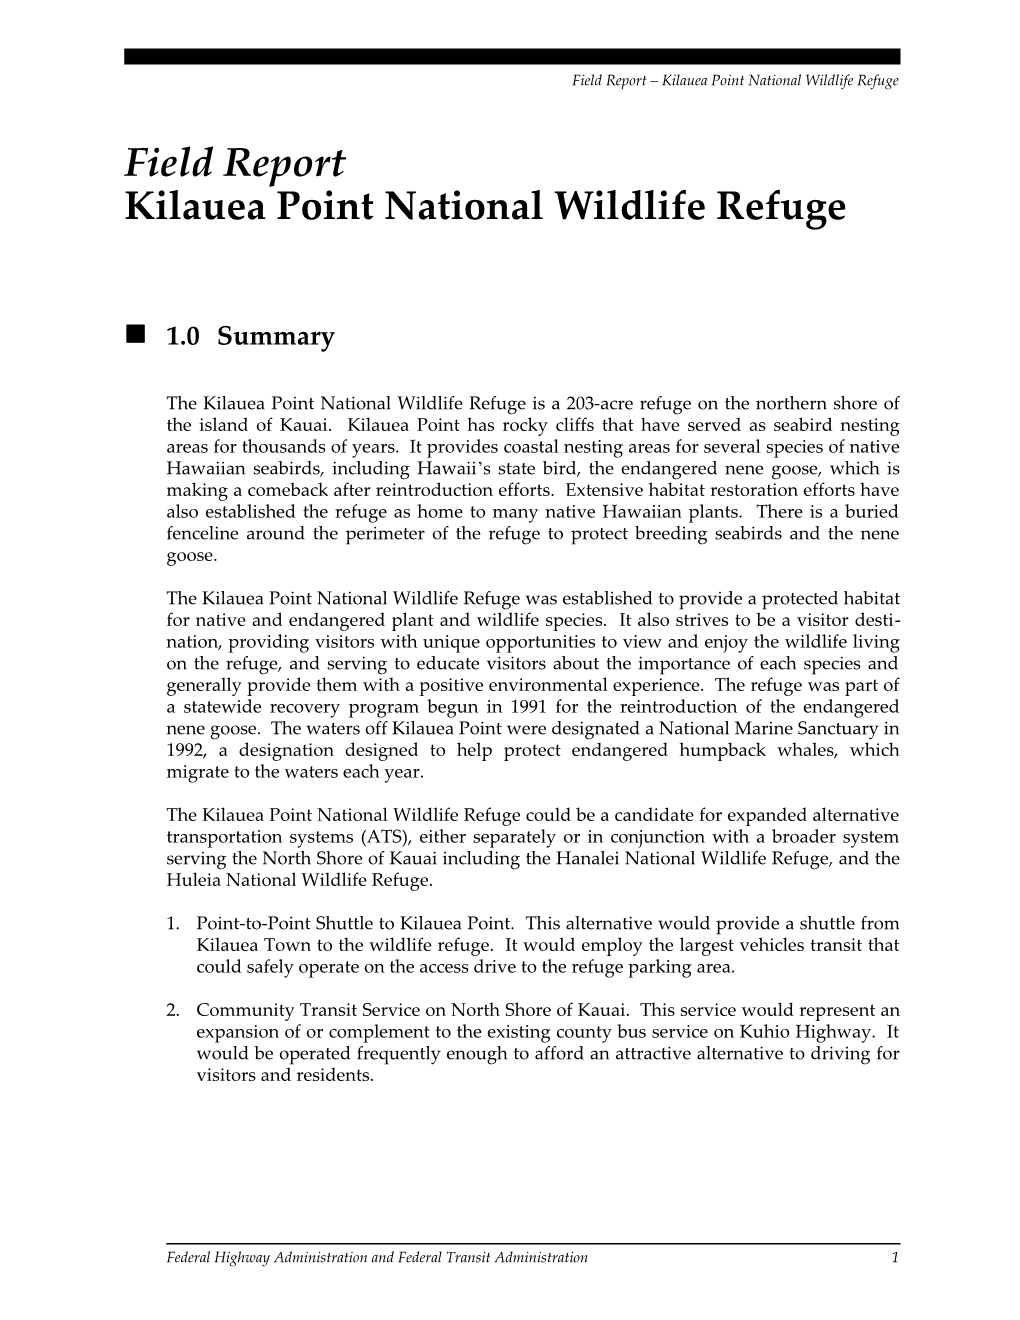 6820.F05 / NPS / Kilauea Point National Wildlife Refuge